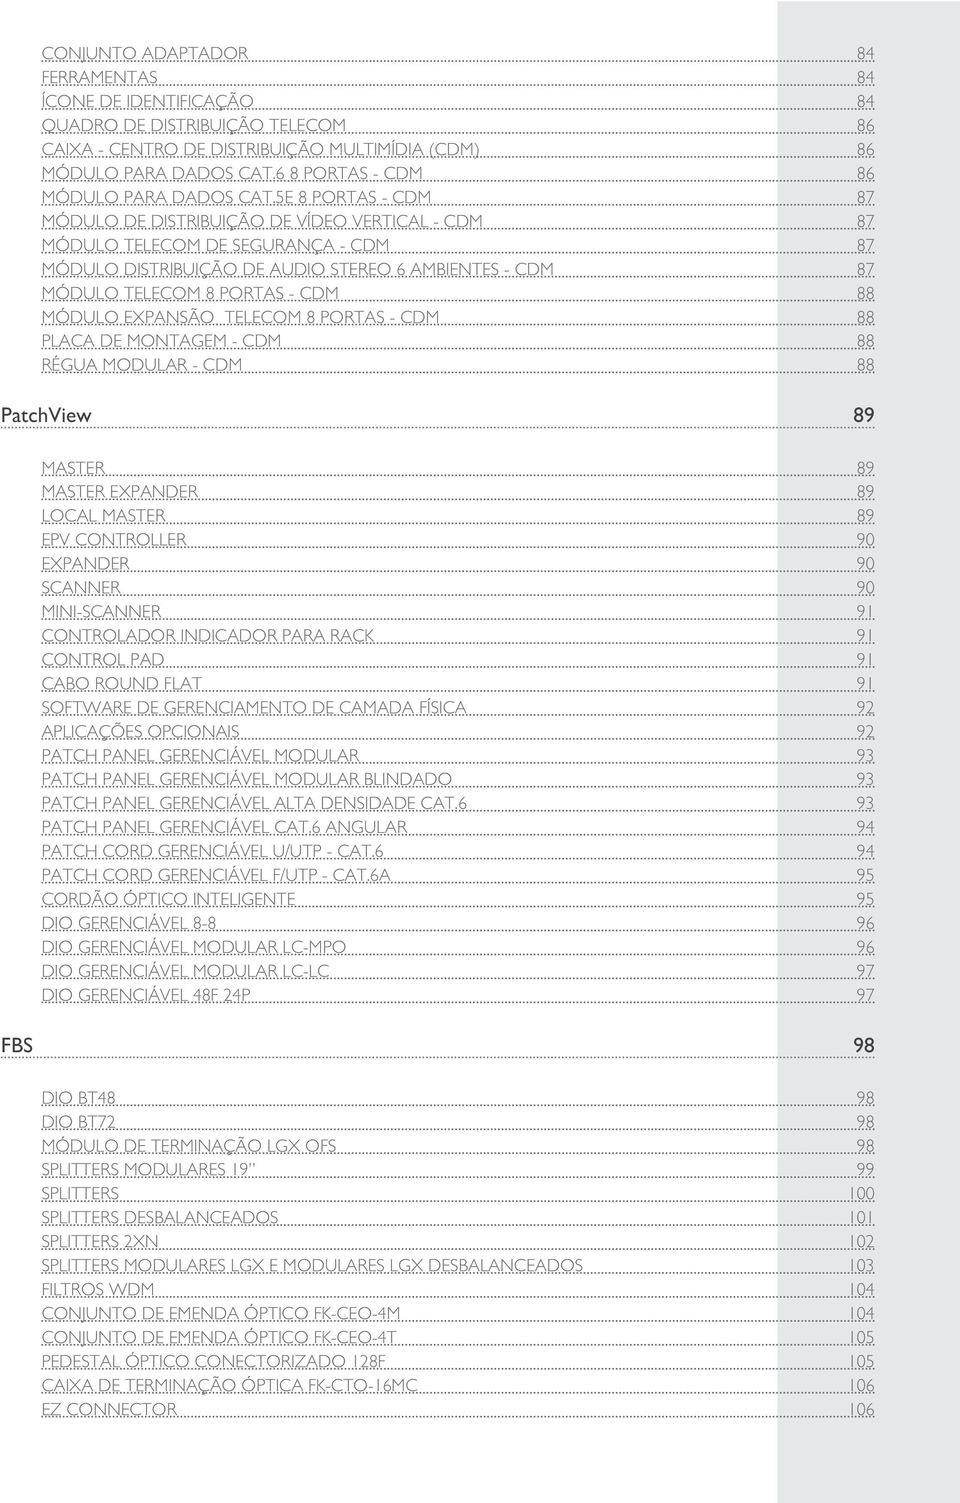 5E 8 PORTAS - CDM 87 MÓDULO DE DISTRIBUIÇÃO DE VÍDEO VERTICAL - CDM 87 MÓDULO TELECOM DE SEGURANÇA - CDM 87 MÓDULO DISTRIBUIÇÃO DE AUDIO STEREO 6 AMBIENTES - CDM 87 MÓDULO TELECOM 8 PORTAS - CDM 88